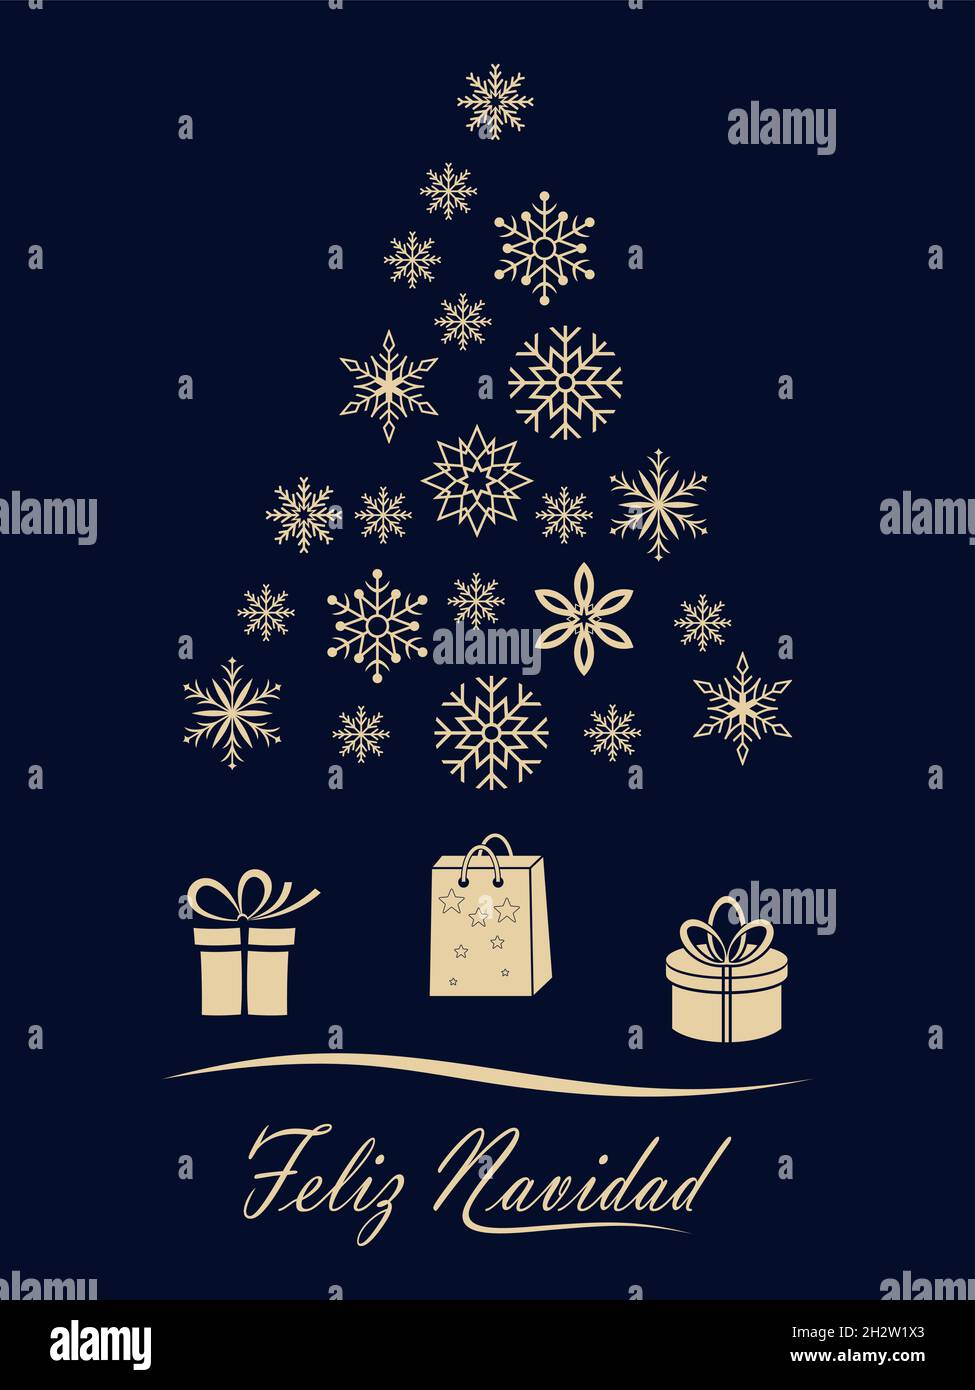 Vektor mit Weihnachtsbaum. Schneeflocke, Geschenk und spanische weihnachtsgrüße Black back. Übersetzung spanisch ins englische: Feliz Navidad ist Frohe Weihnachten. Stock Vektor